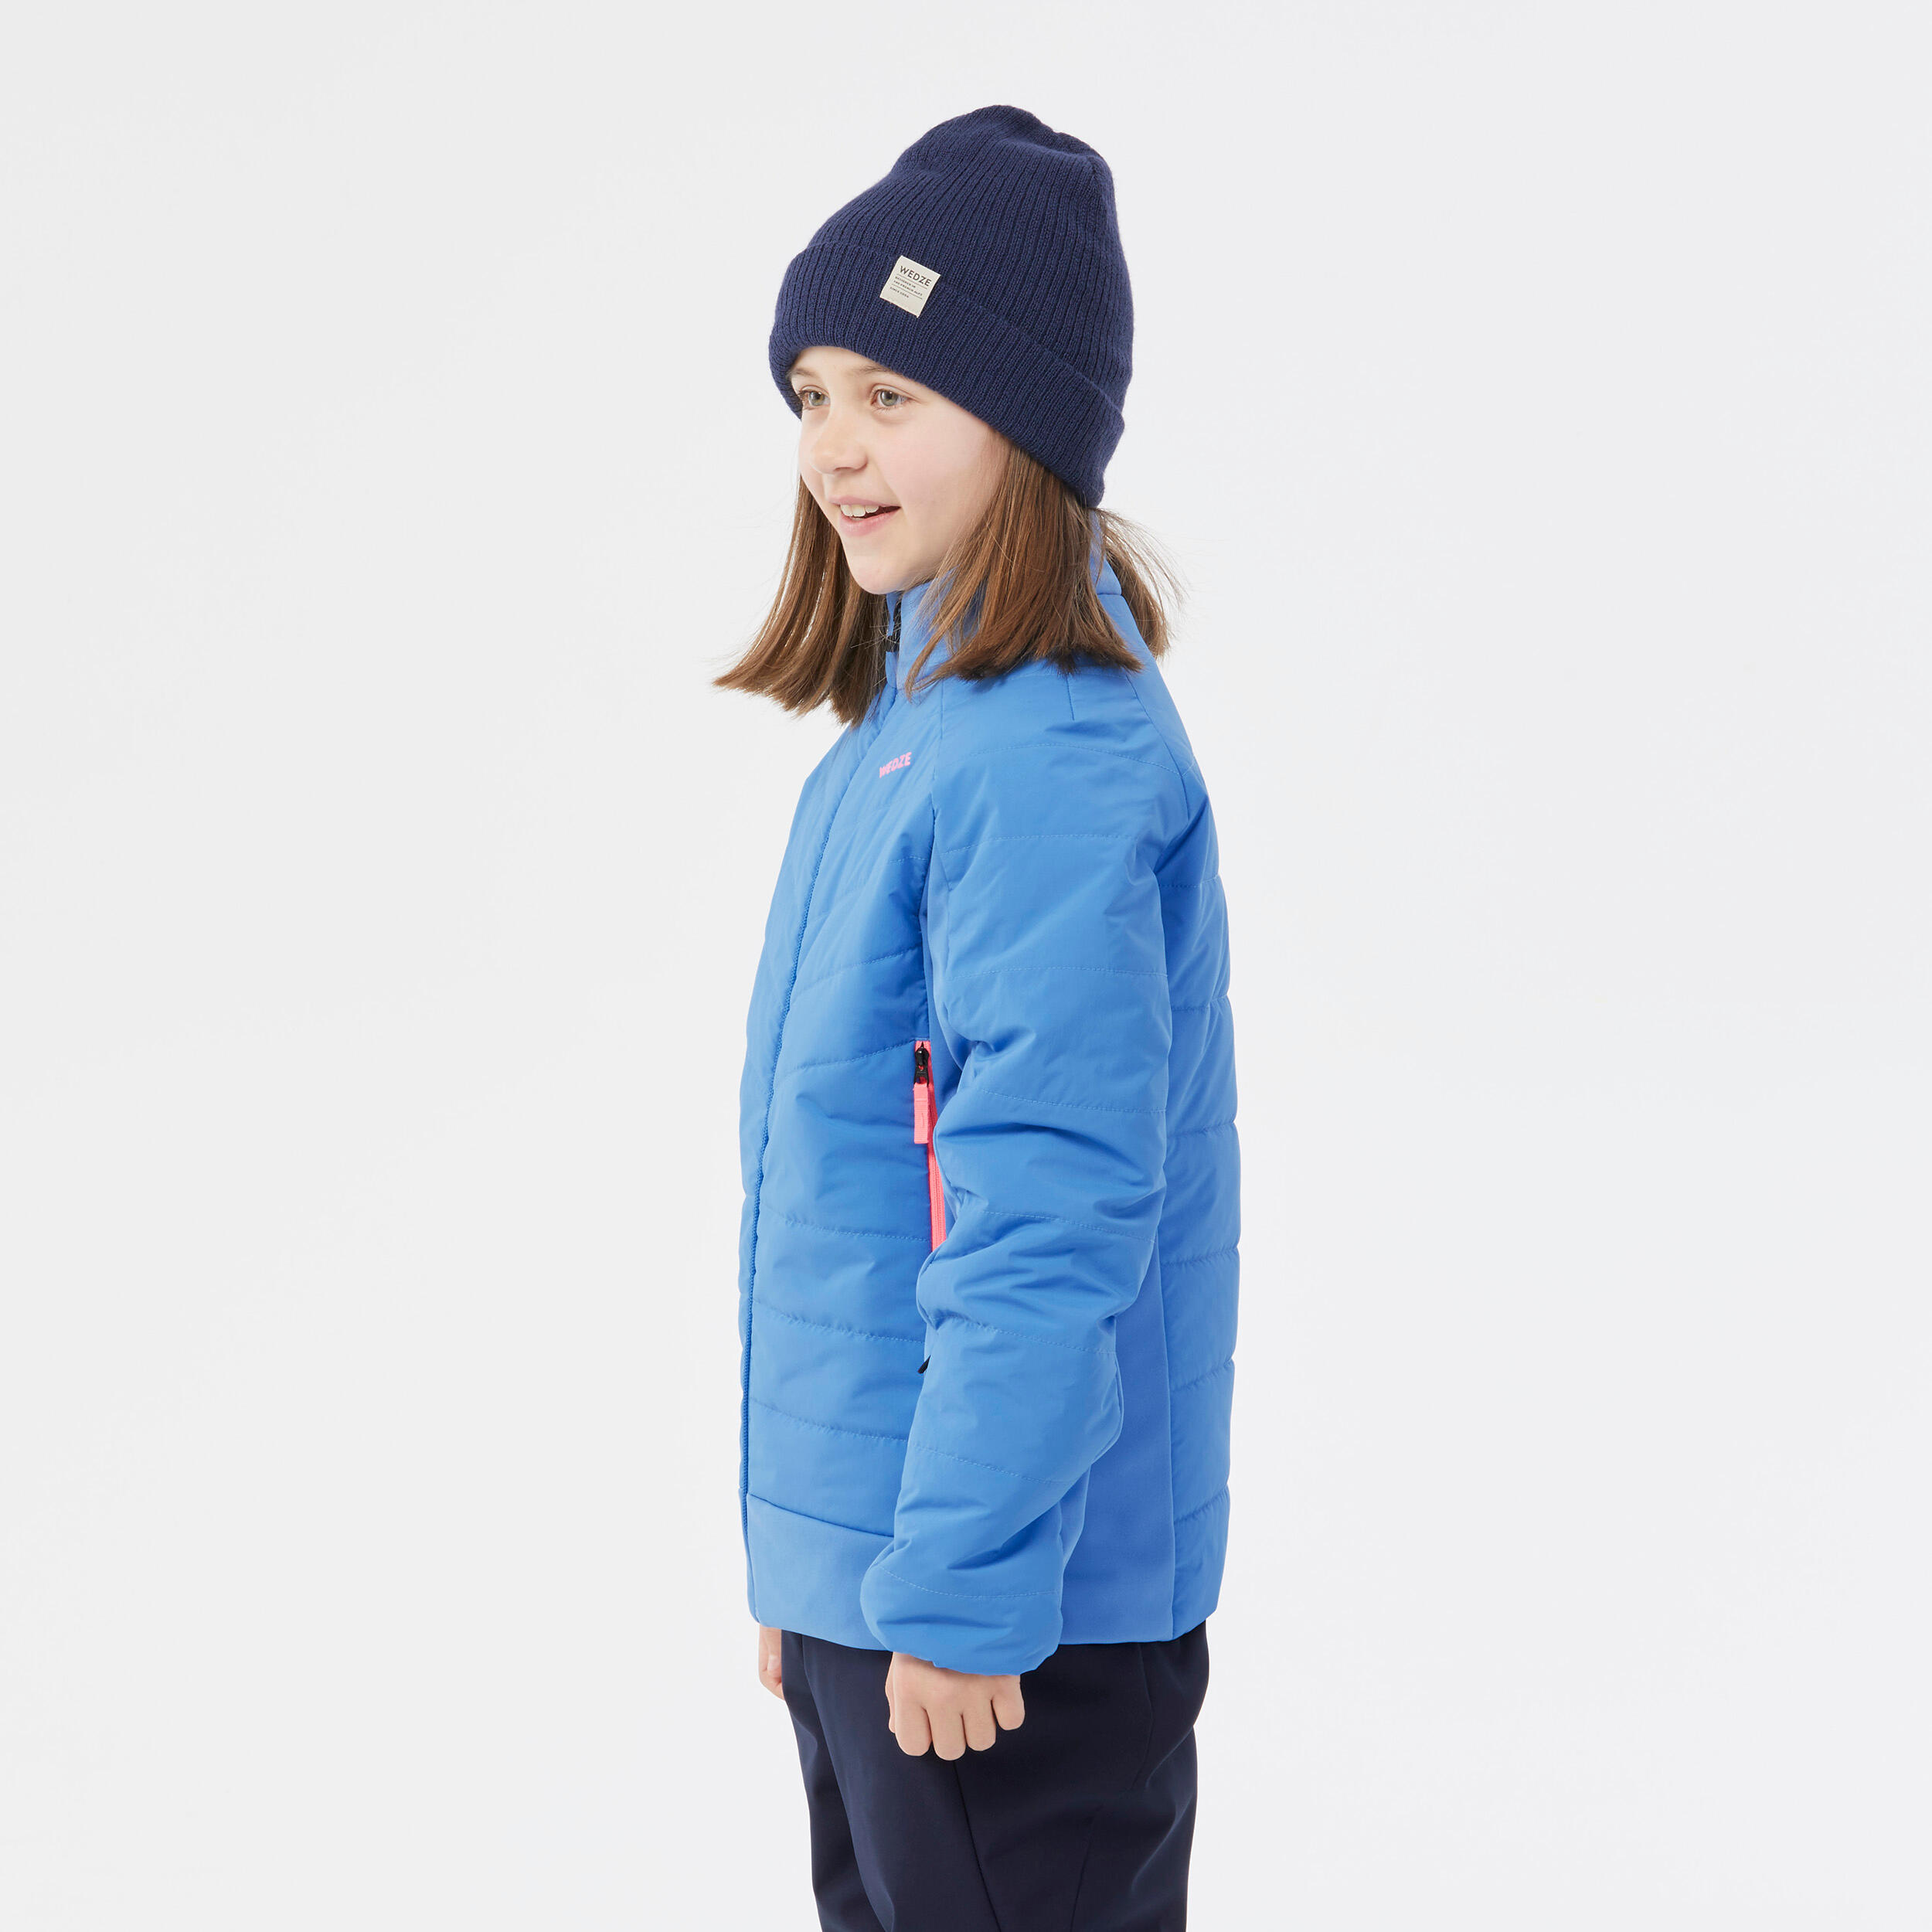 Children's lightweight ski jacket 900 - Blue 4/7